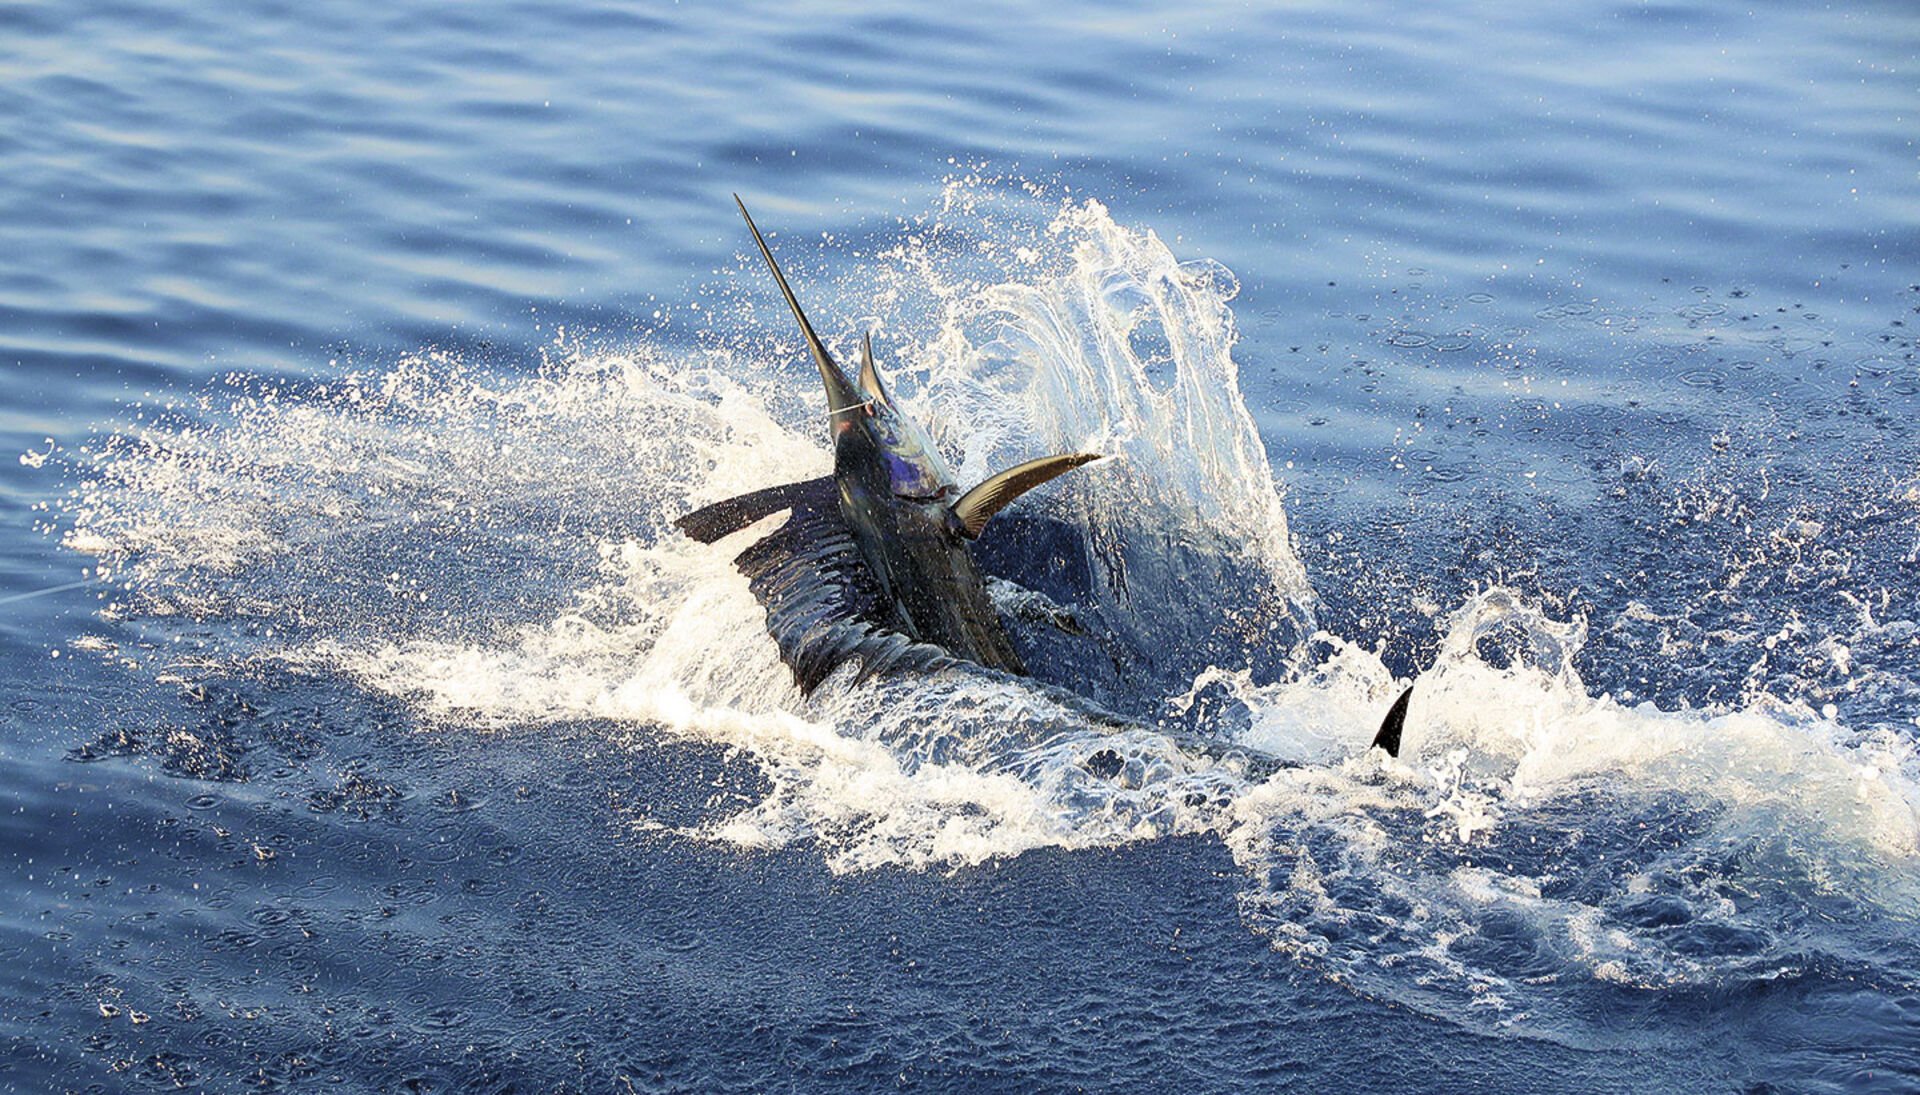  Auch wenn der Sailfish gehakt ist – gewonnen ist der Kampf mit diesem Gegner noch lange nicht!  